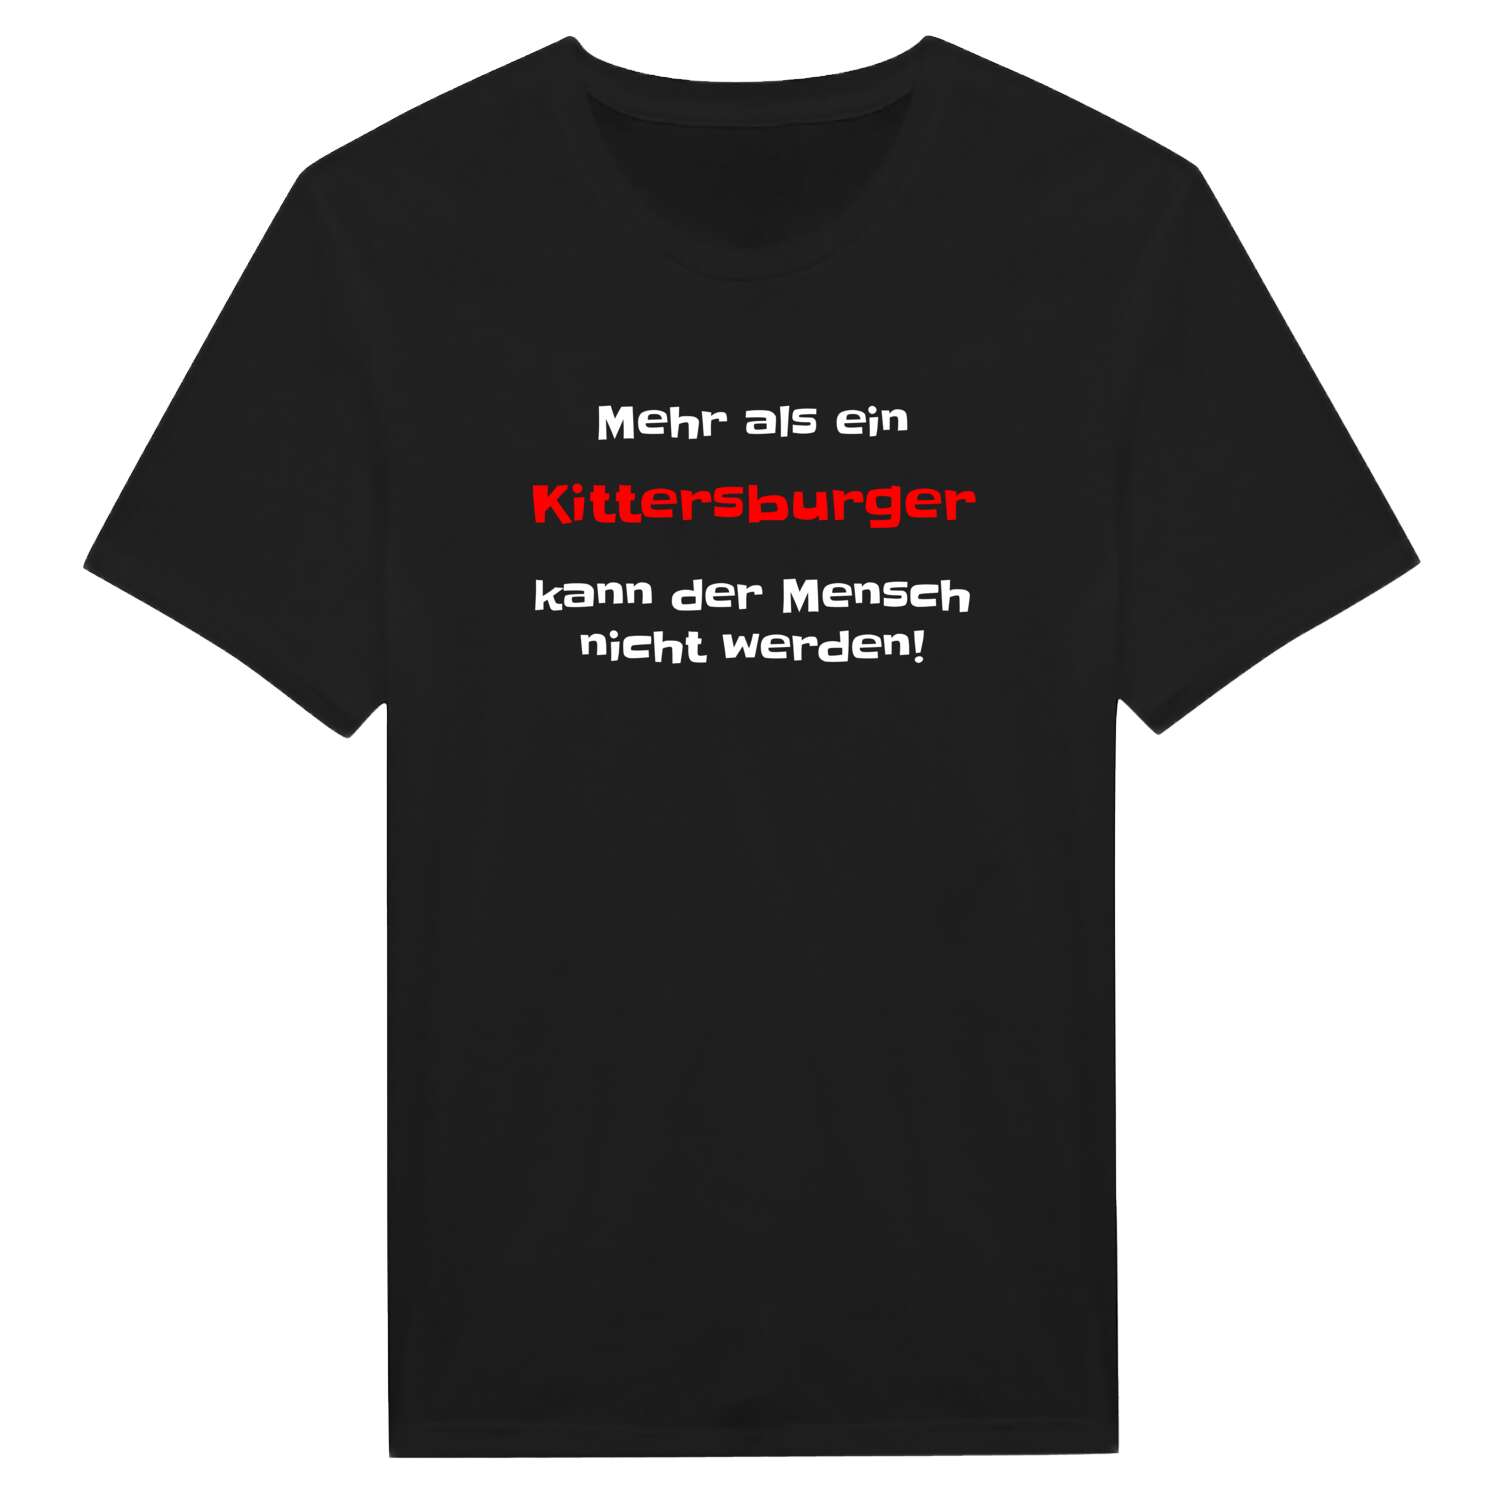 Kittersburg T-Shirt »Mehr als ein«